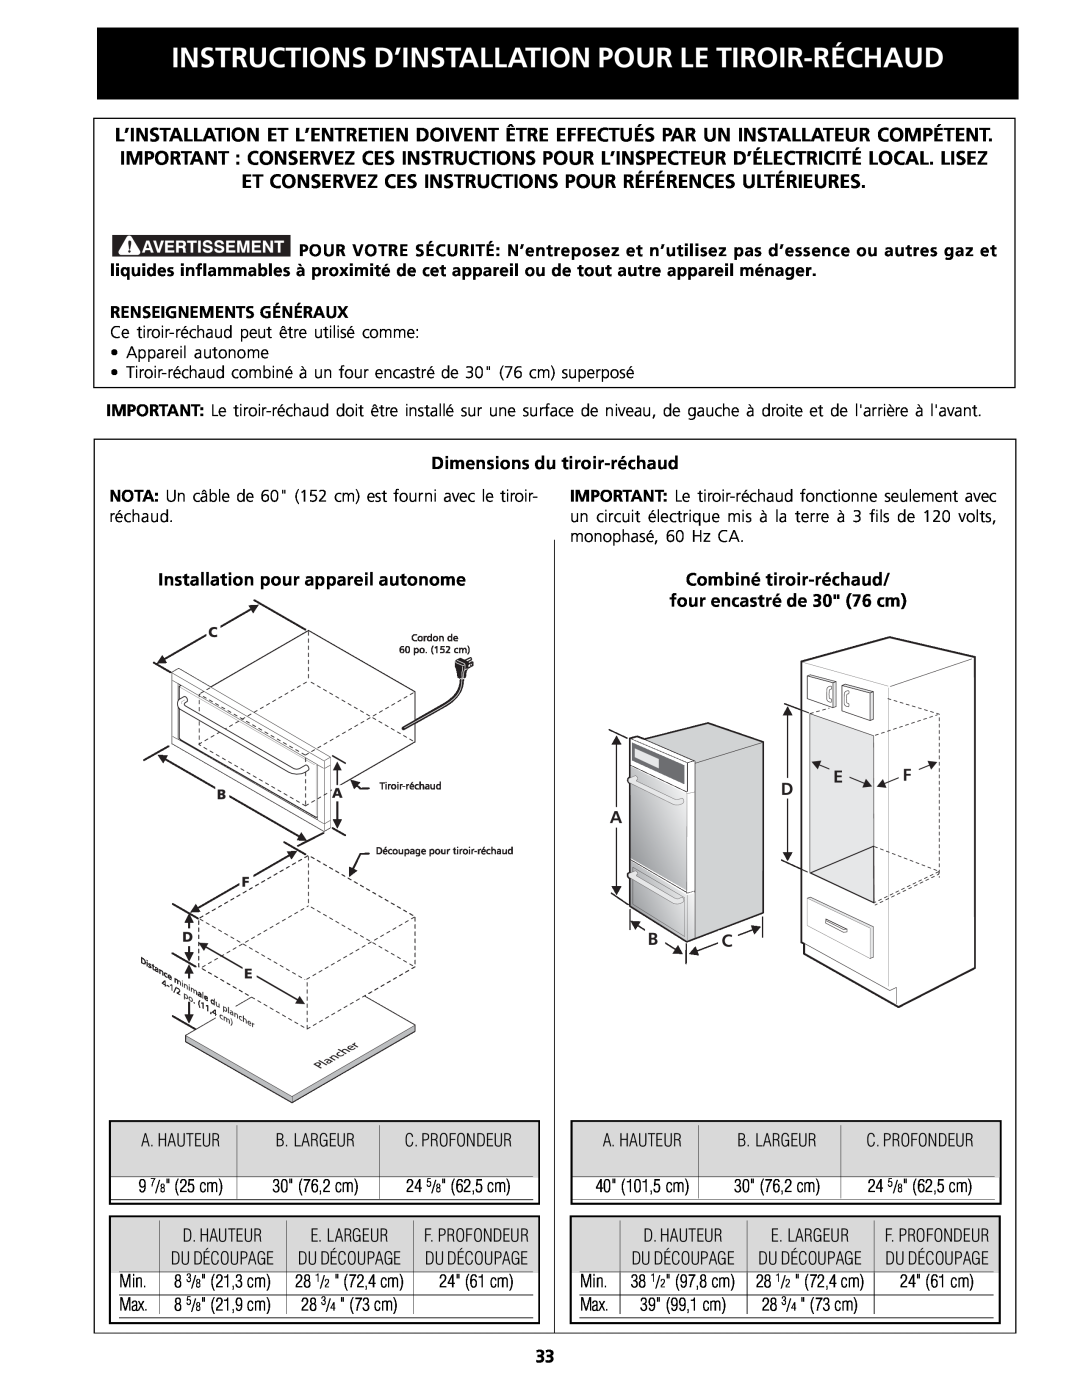 Frigidaire Warm & Serve Drawer Renseignements Généraux, Dimensions du tiroir-réchaud, Installation pour appareil autonome 